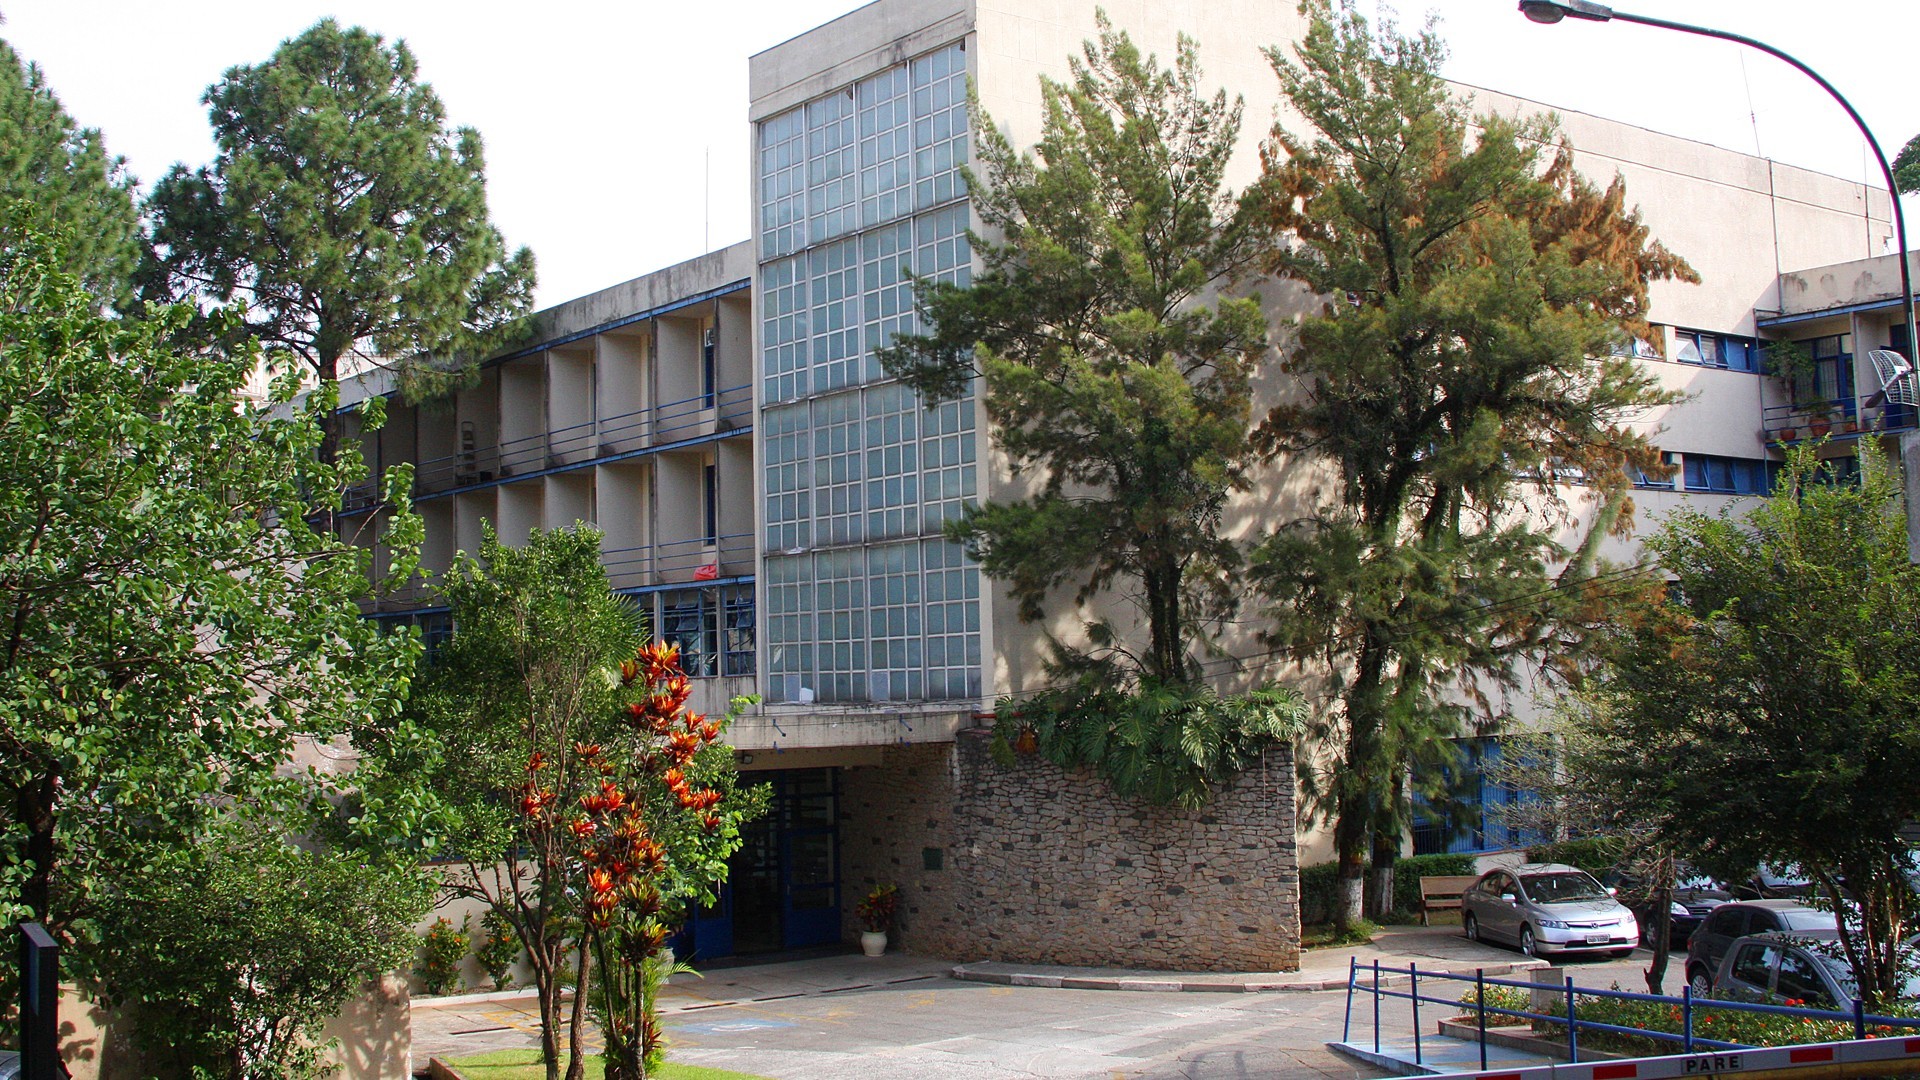 SciELO - Brasil - A Escola de Enfermagem da Universidade de São